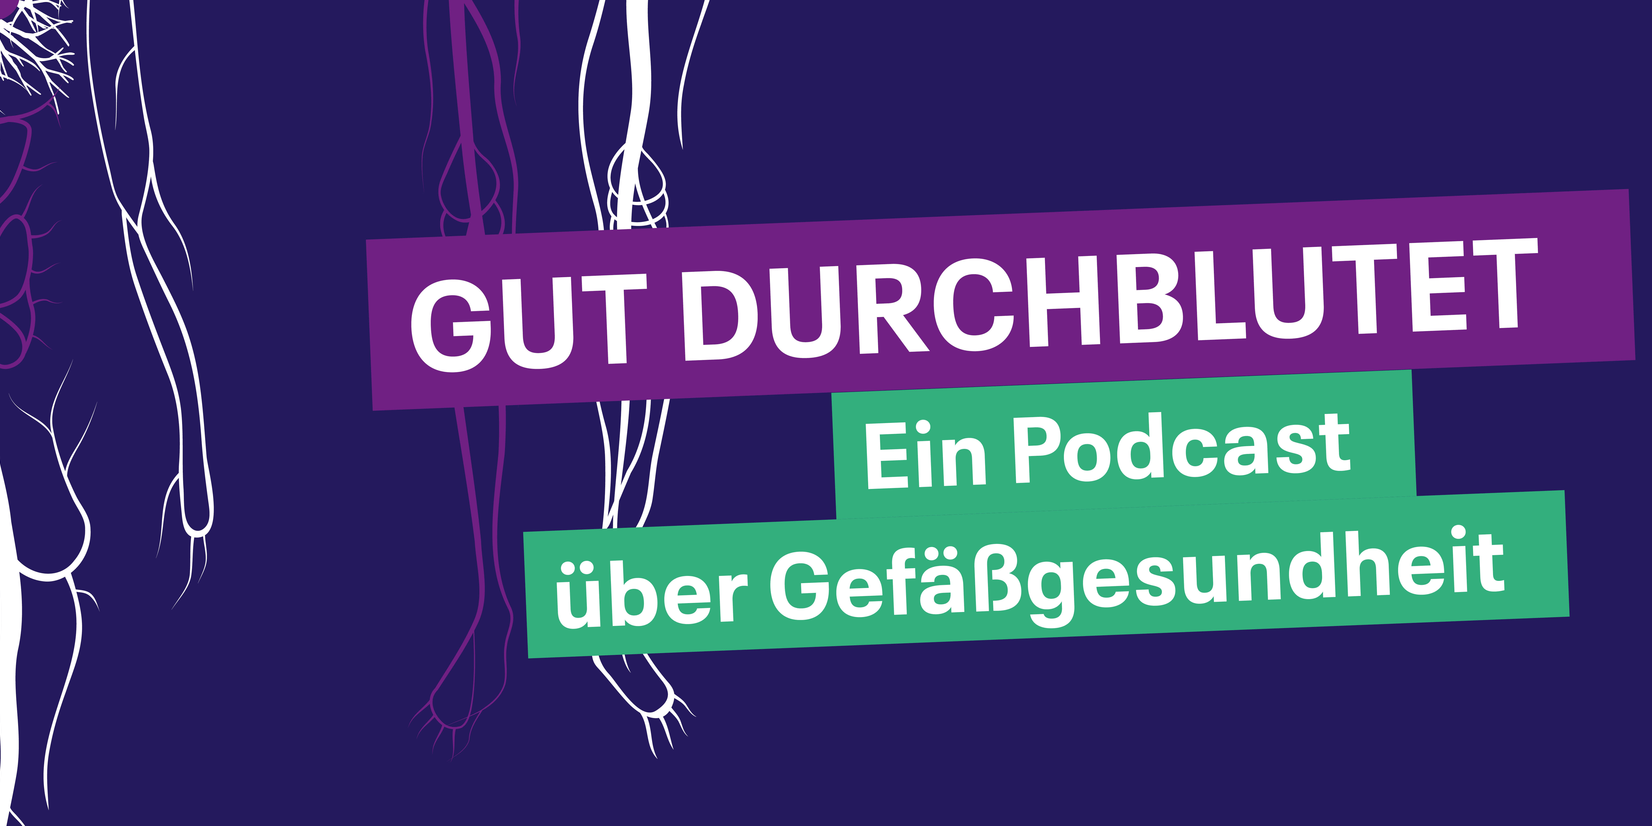 Coverbild des Podcasts: Gefäße des Menschen in gezeichneter Form sowie das Logo des Krankenhauses Hubertus und des Waldkrankenhauses Spandau